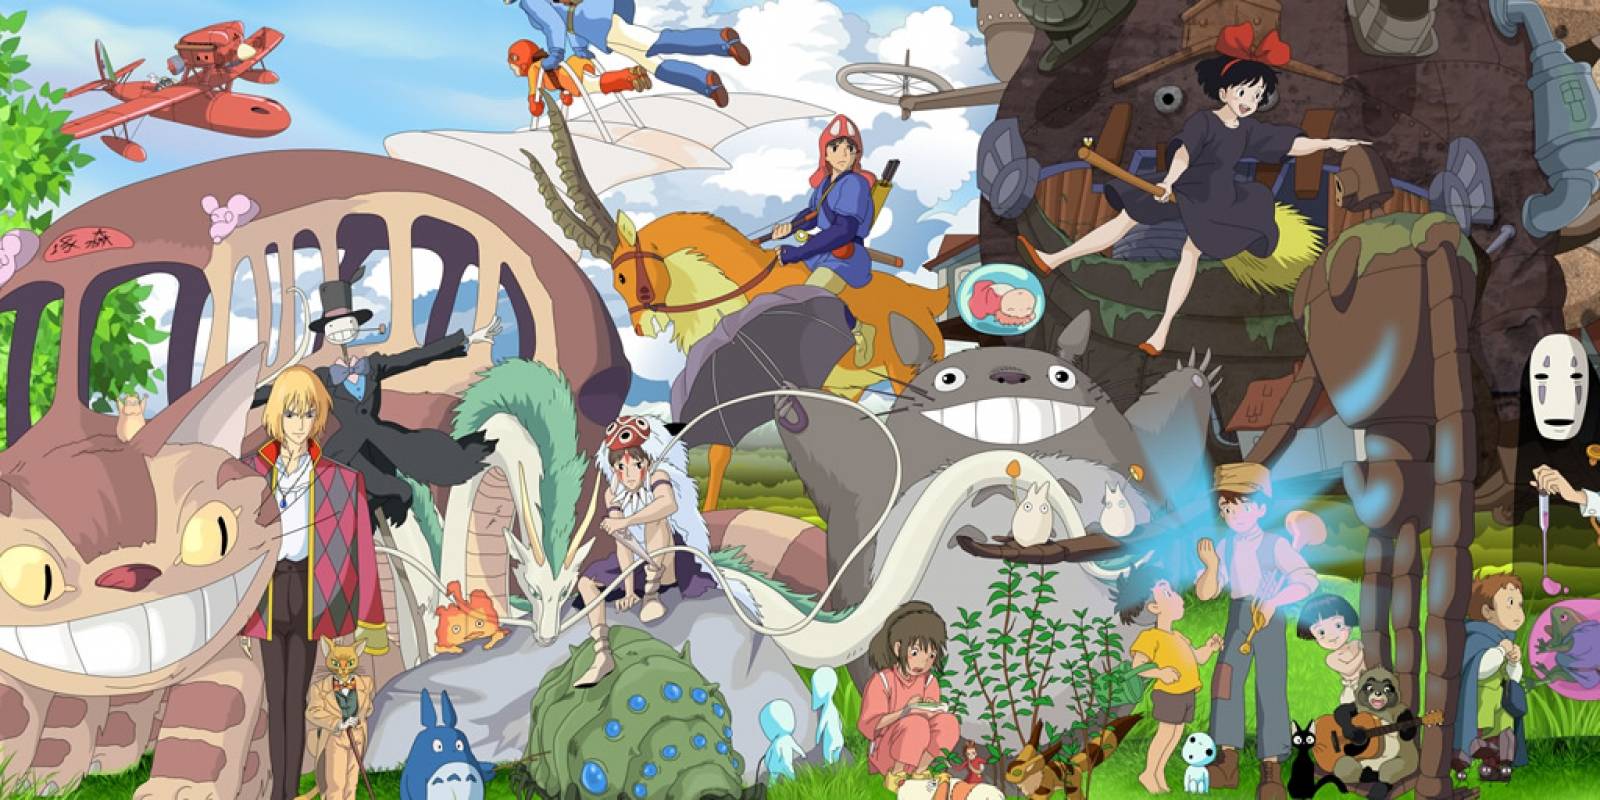 Las películas de Studio Ghibli llegan a Netflix Latinoamerica